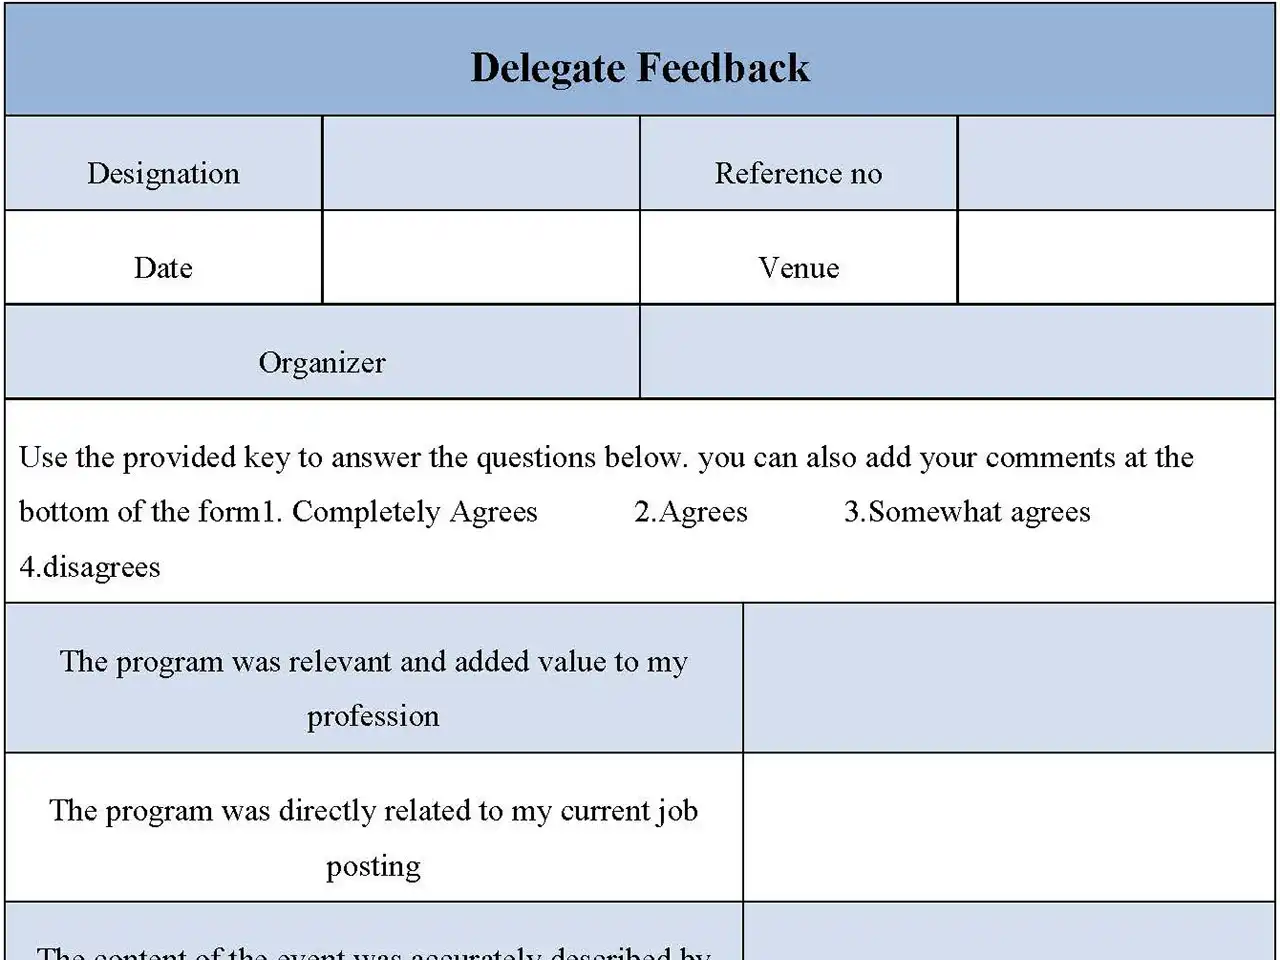 Delegate Feedback Form